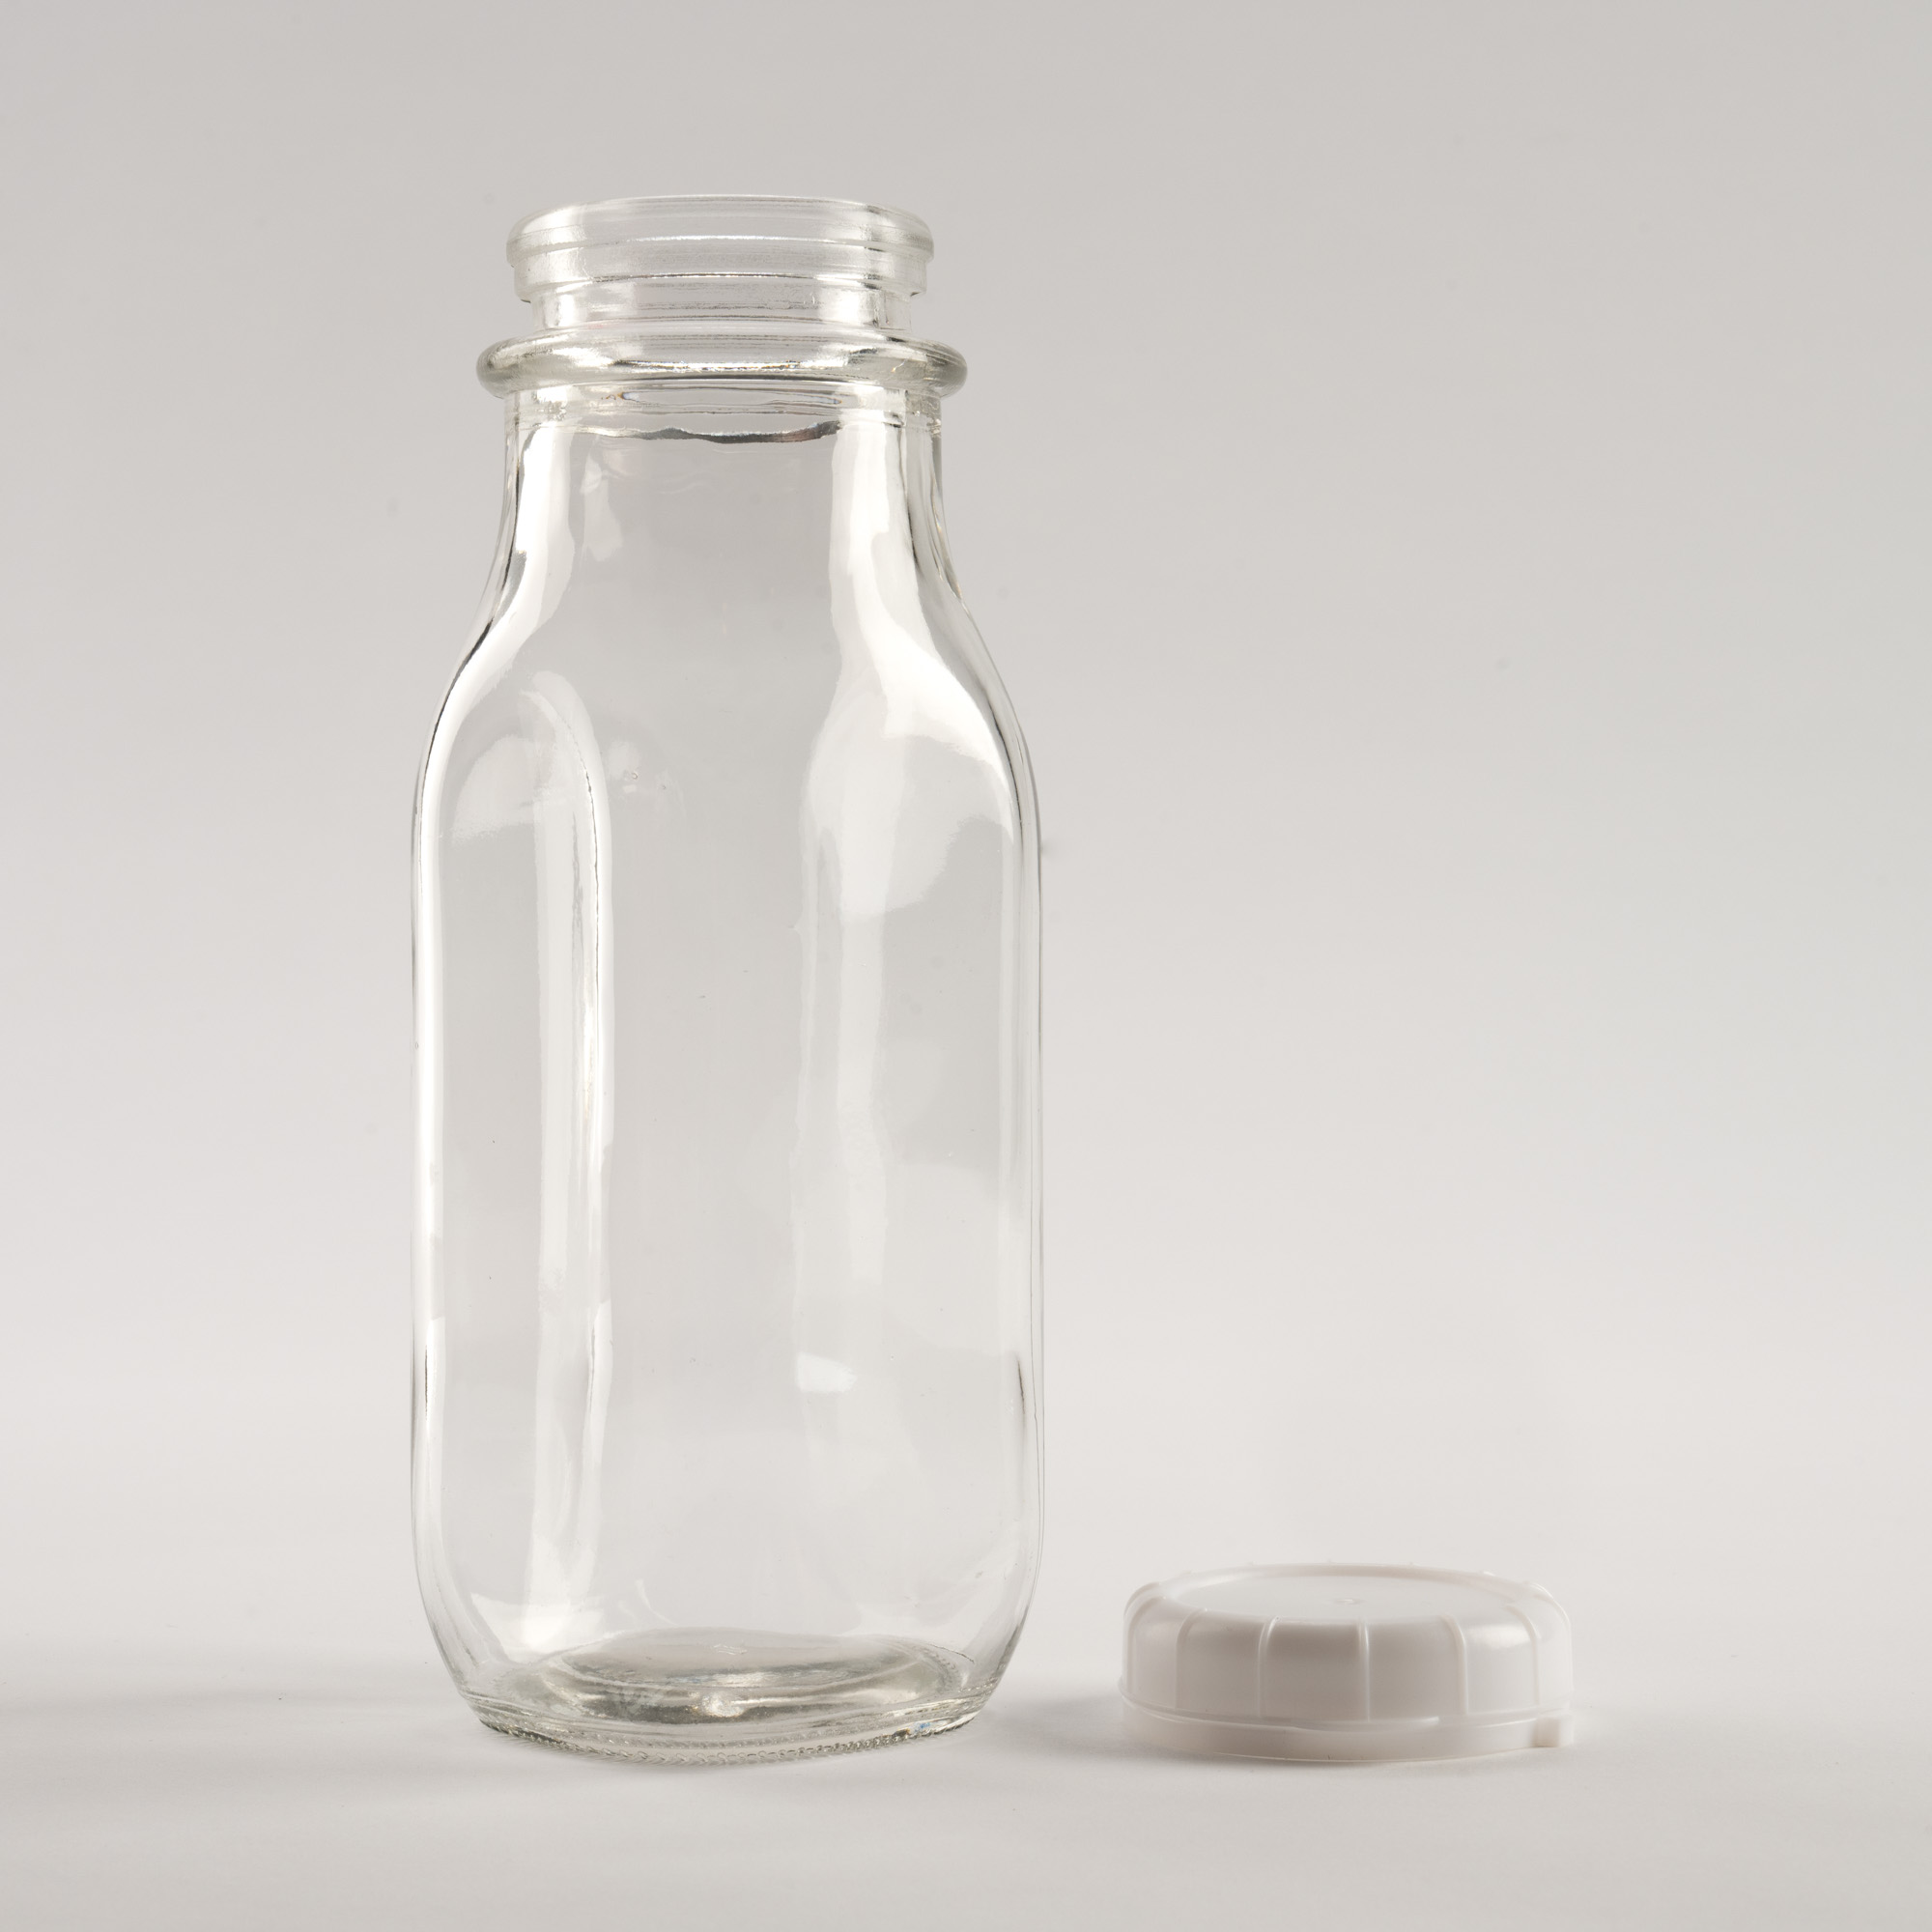 12 oz Glass Bottle - 3,432 qty pallet - 60 cents ea.